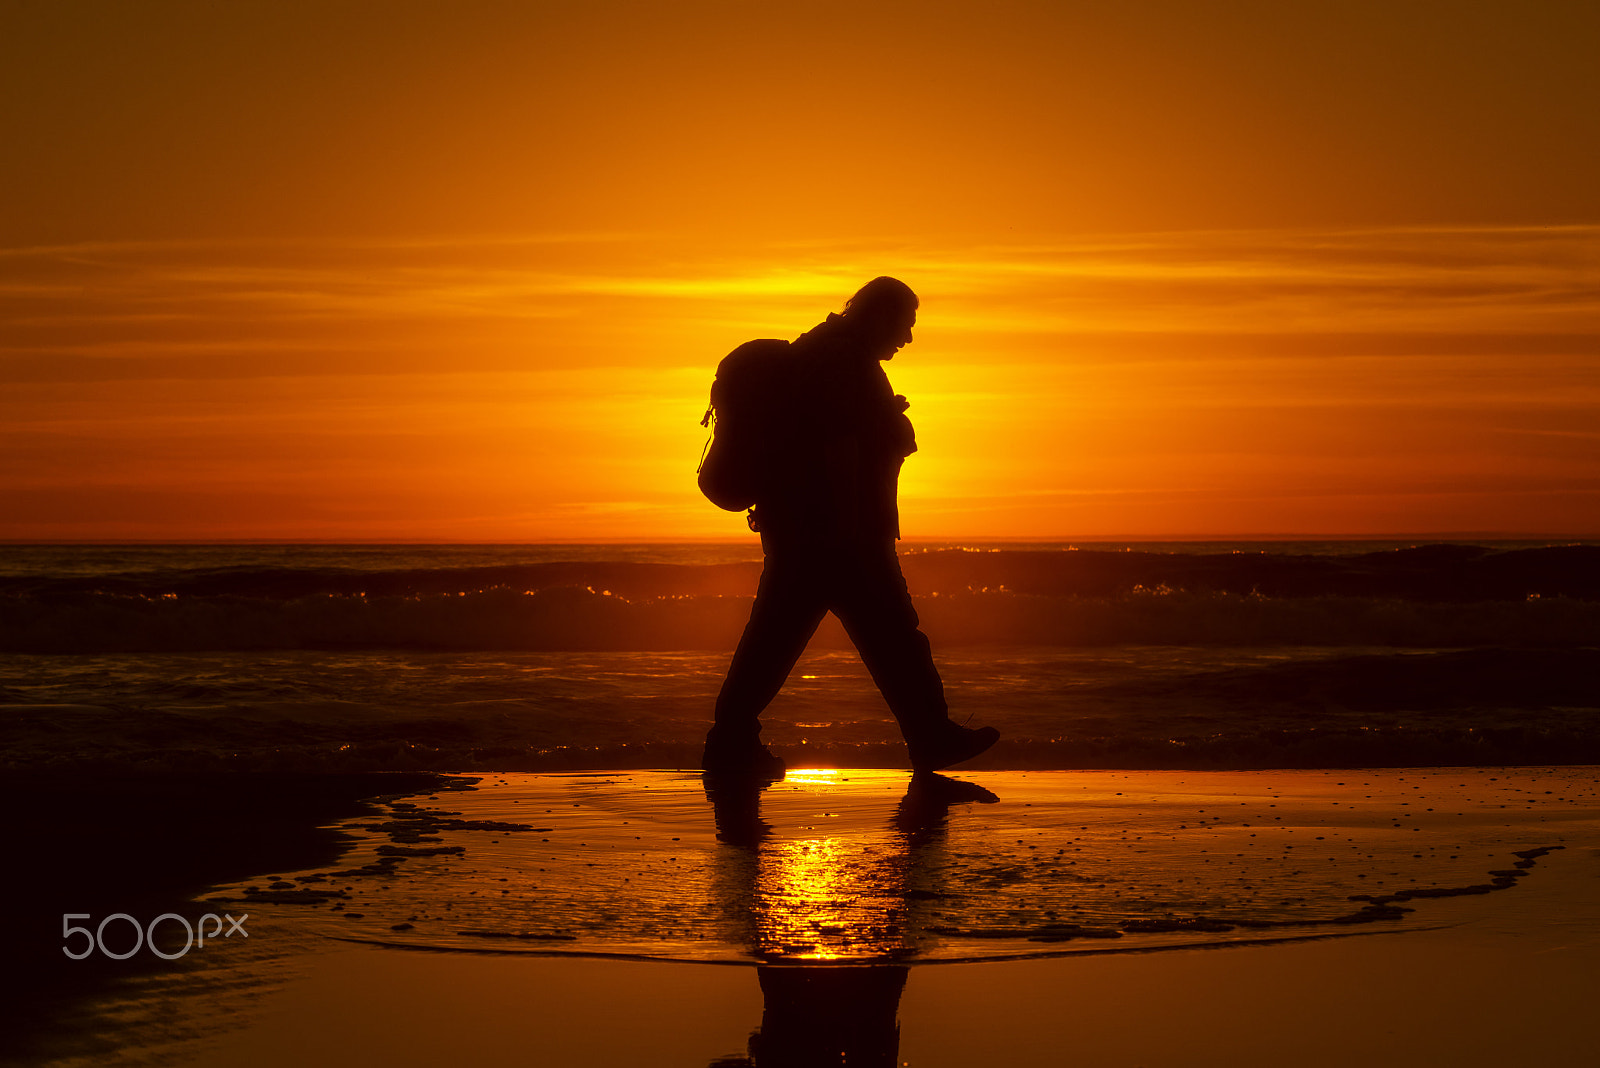 Nikon D600 + Nikon AF-S Nikkor 80-400mm F4.5-5.6G ED VR sample photo. Man walks on the beach at sunset in oceanside. photography